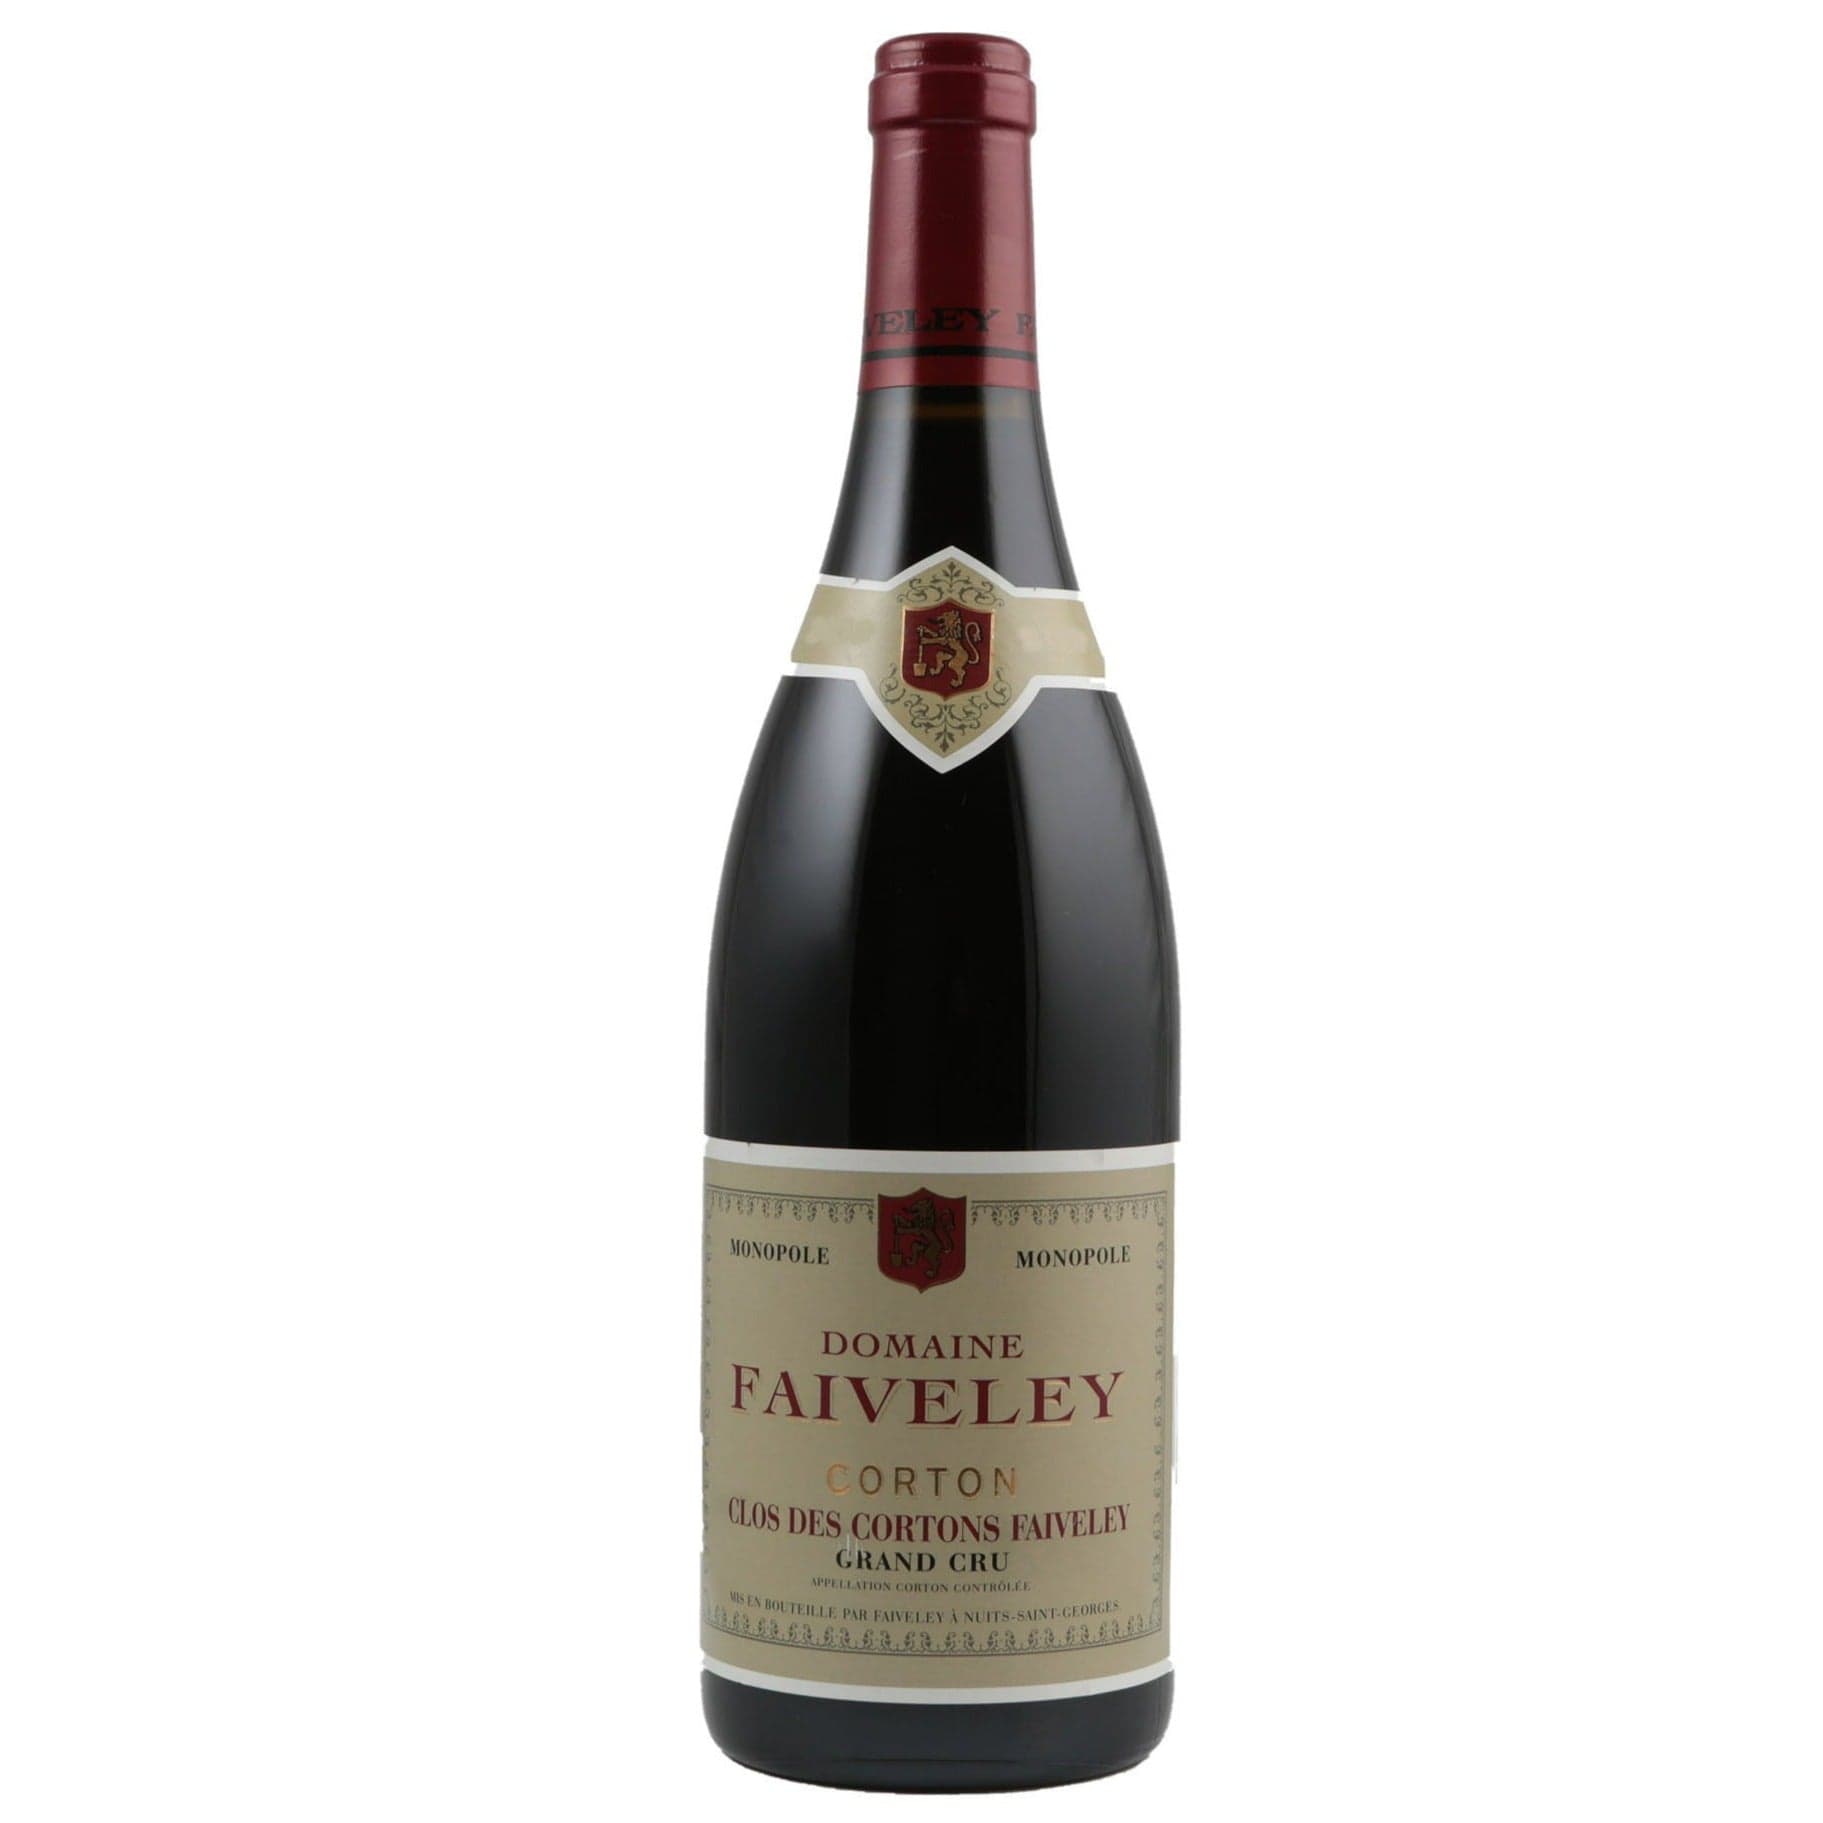 Single bottle of Red wine Dom. Faiveley, Clos des Cortons Monopole Grand Cru, Corton Rouge, 2002 100% Pinor Noir